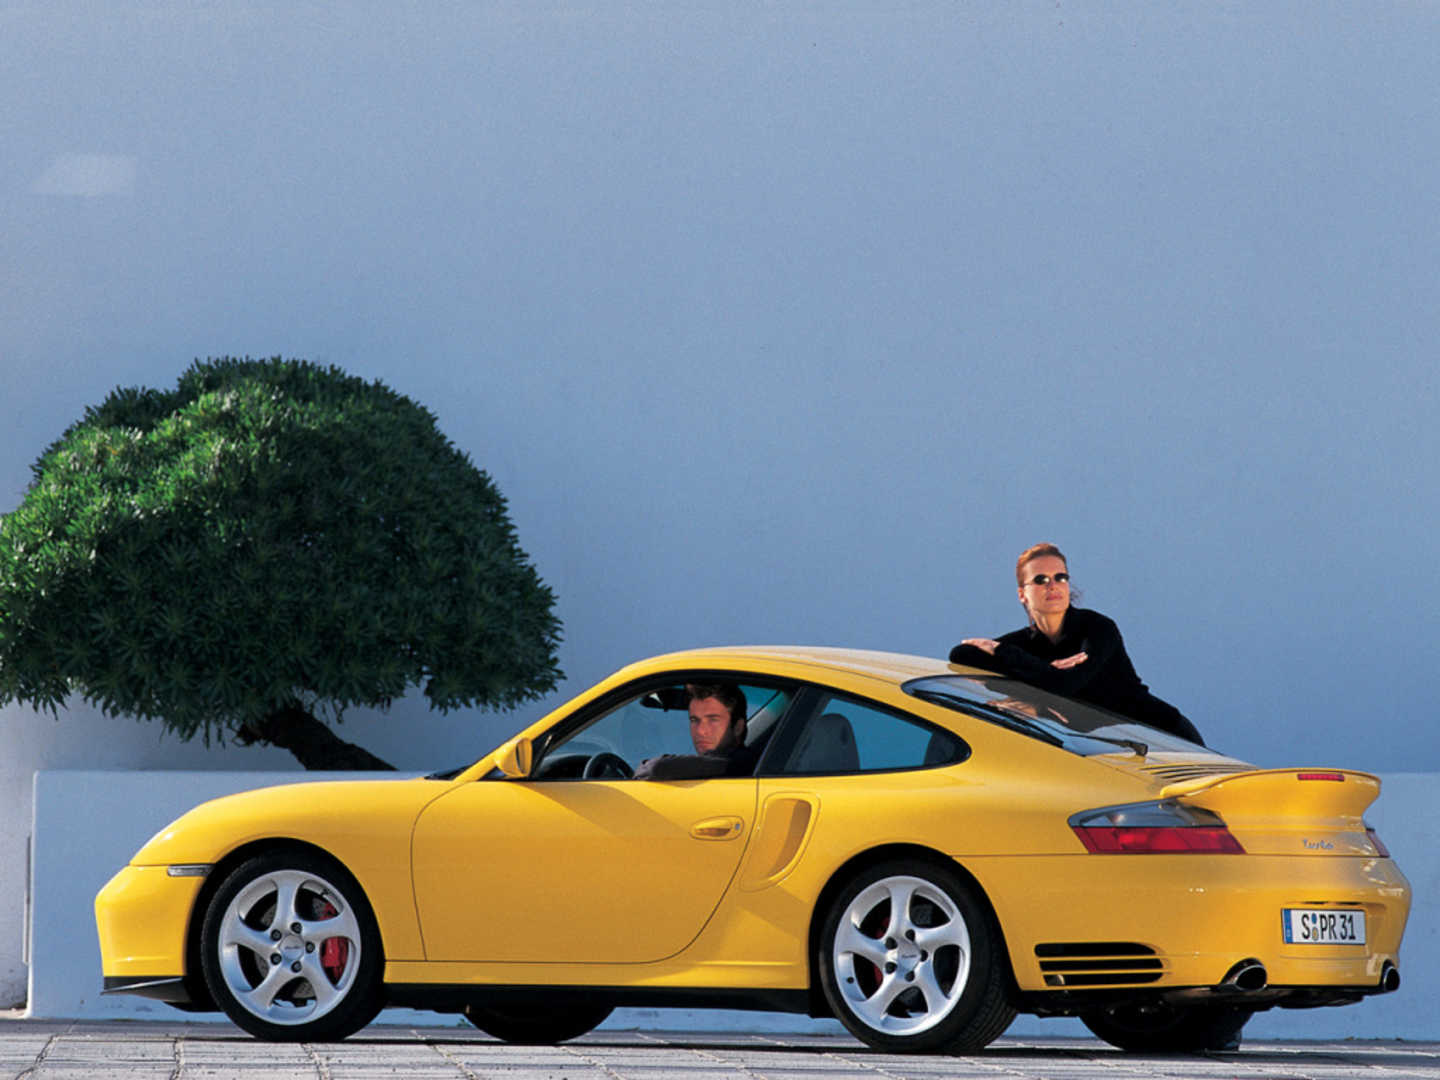 Porsche 911 "996" jaune de profil avec une personne au volant